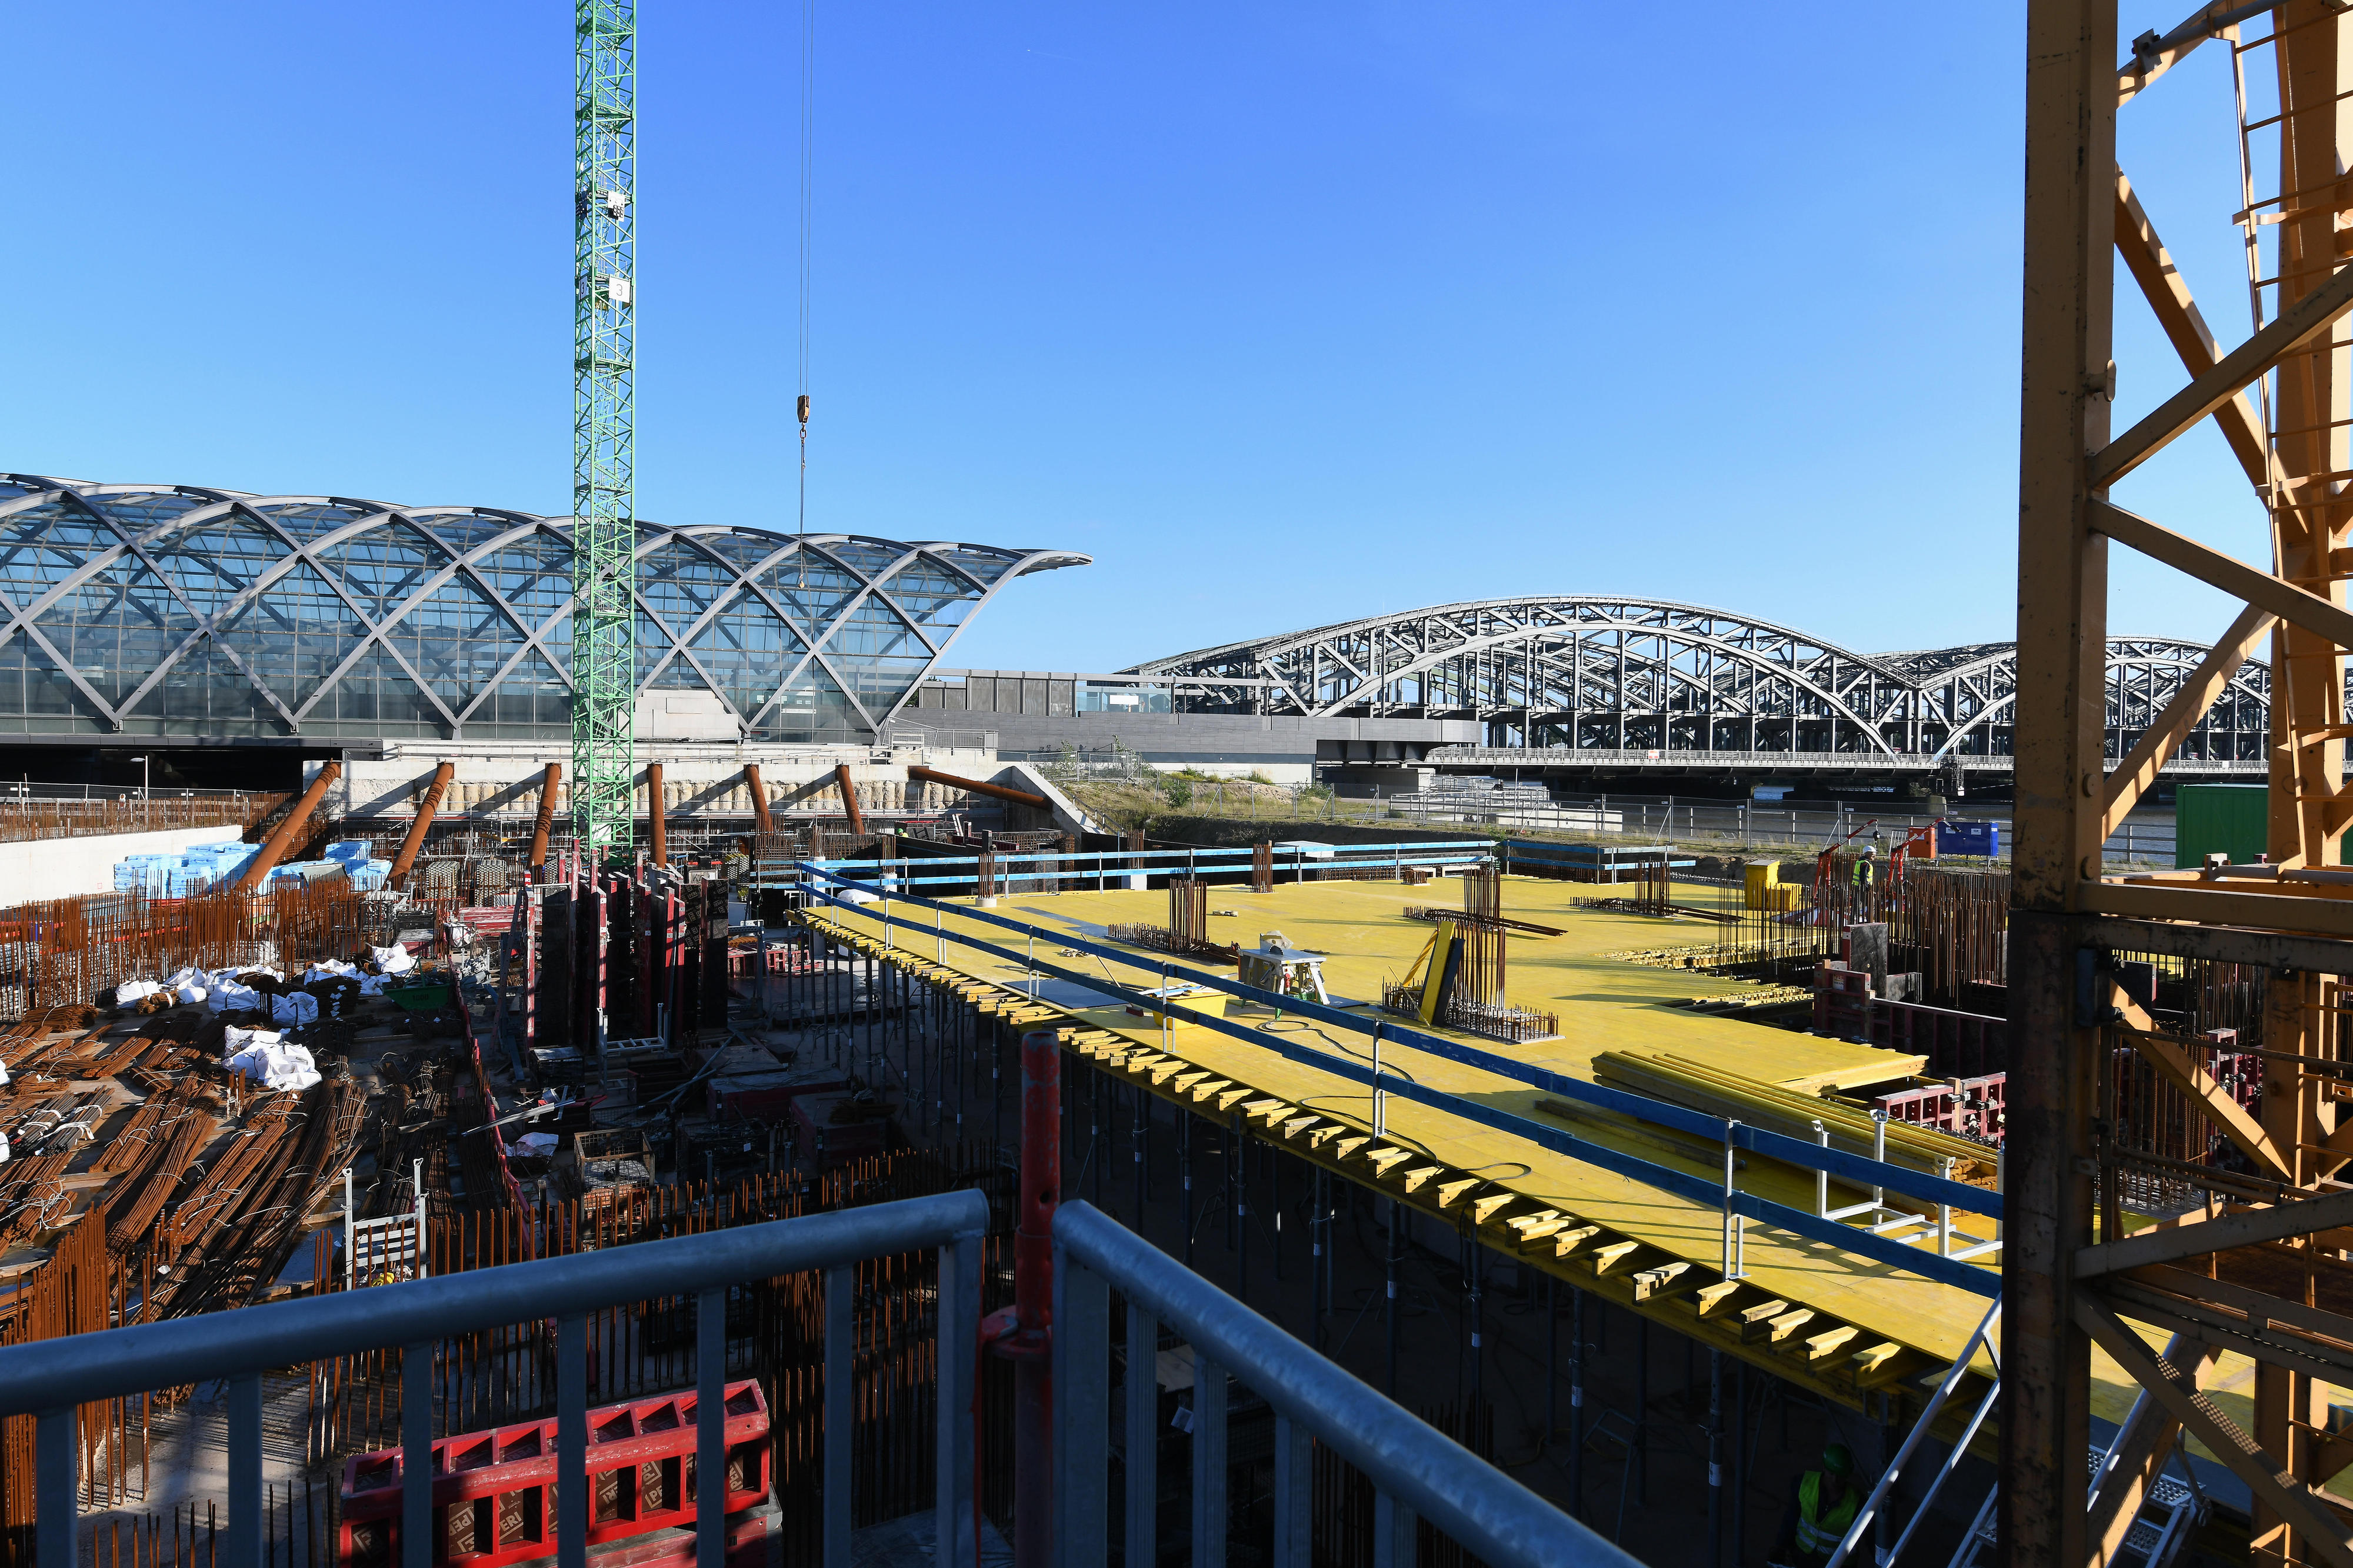 Der Blick von der Baustelle auf die S-Bahnstation Elbbrücken mit den markanten Glasgewölben